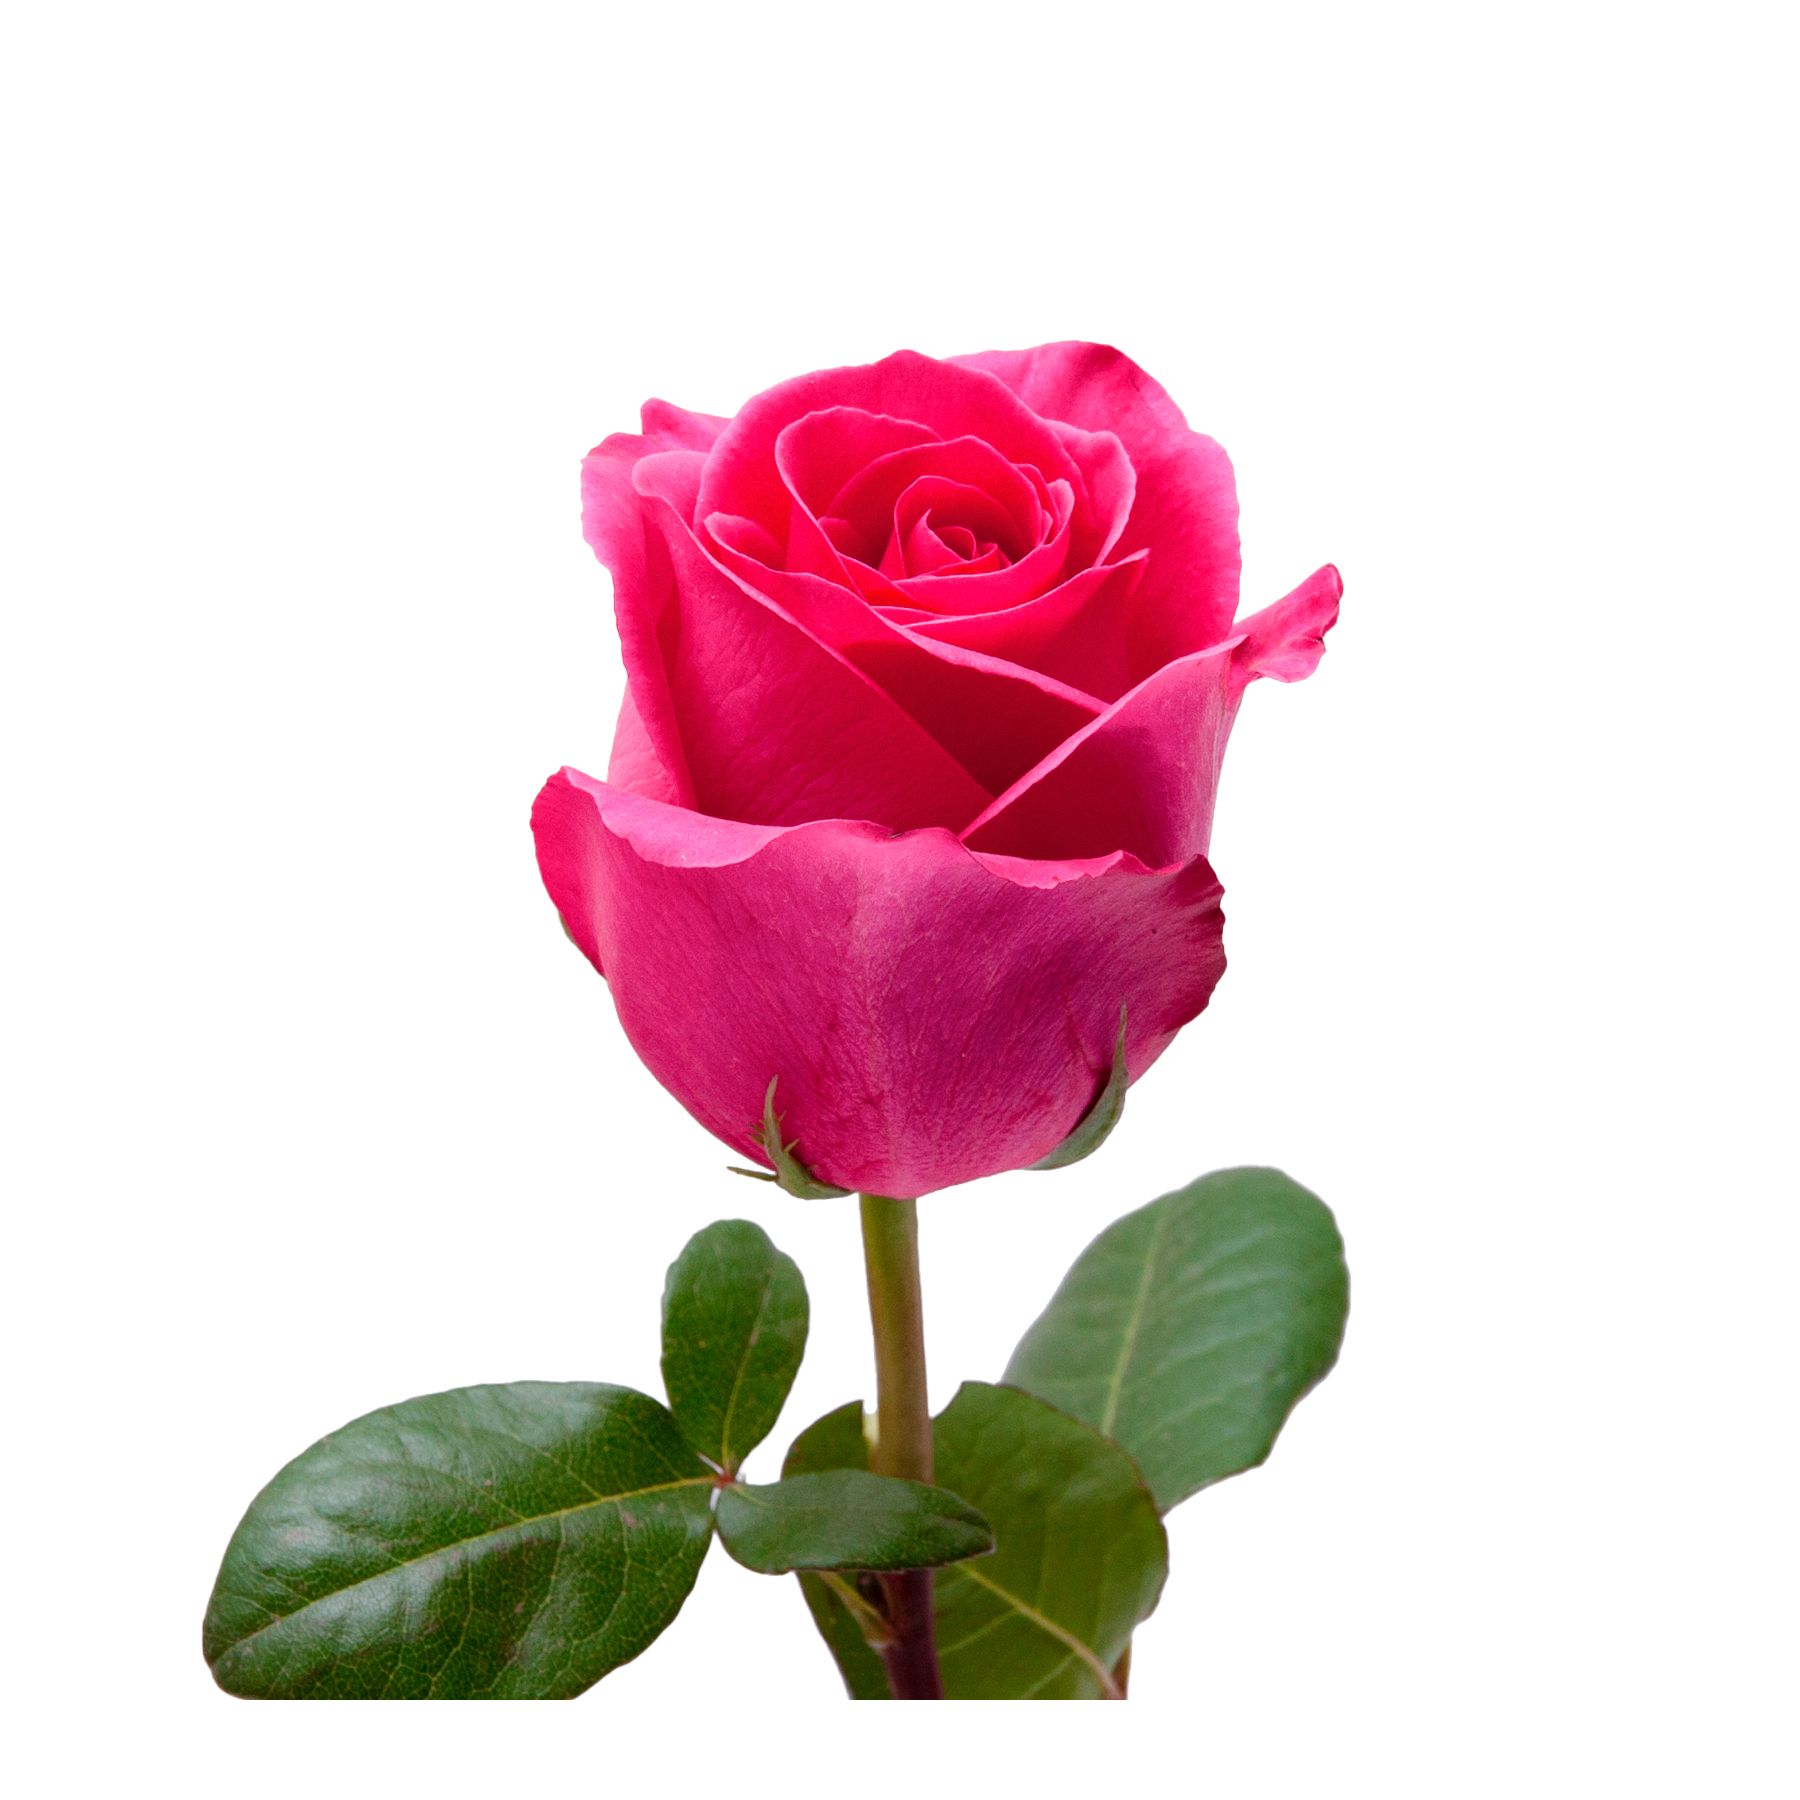 5,000 Rose Petals - Hot Pink